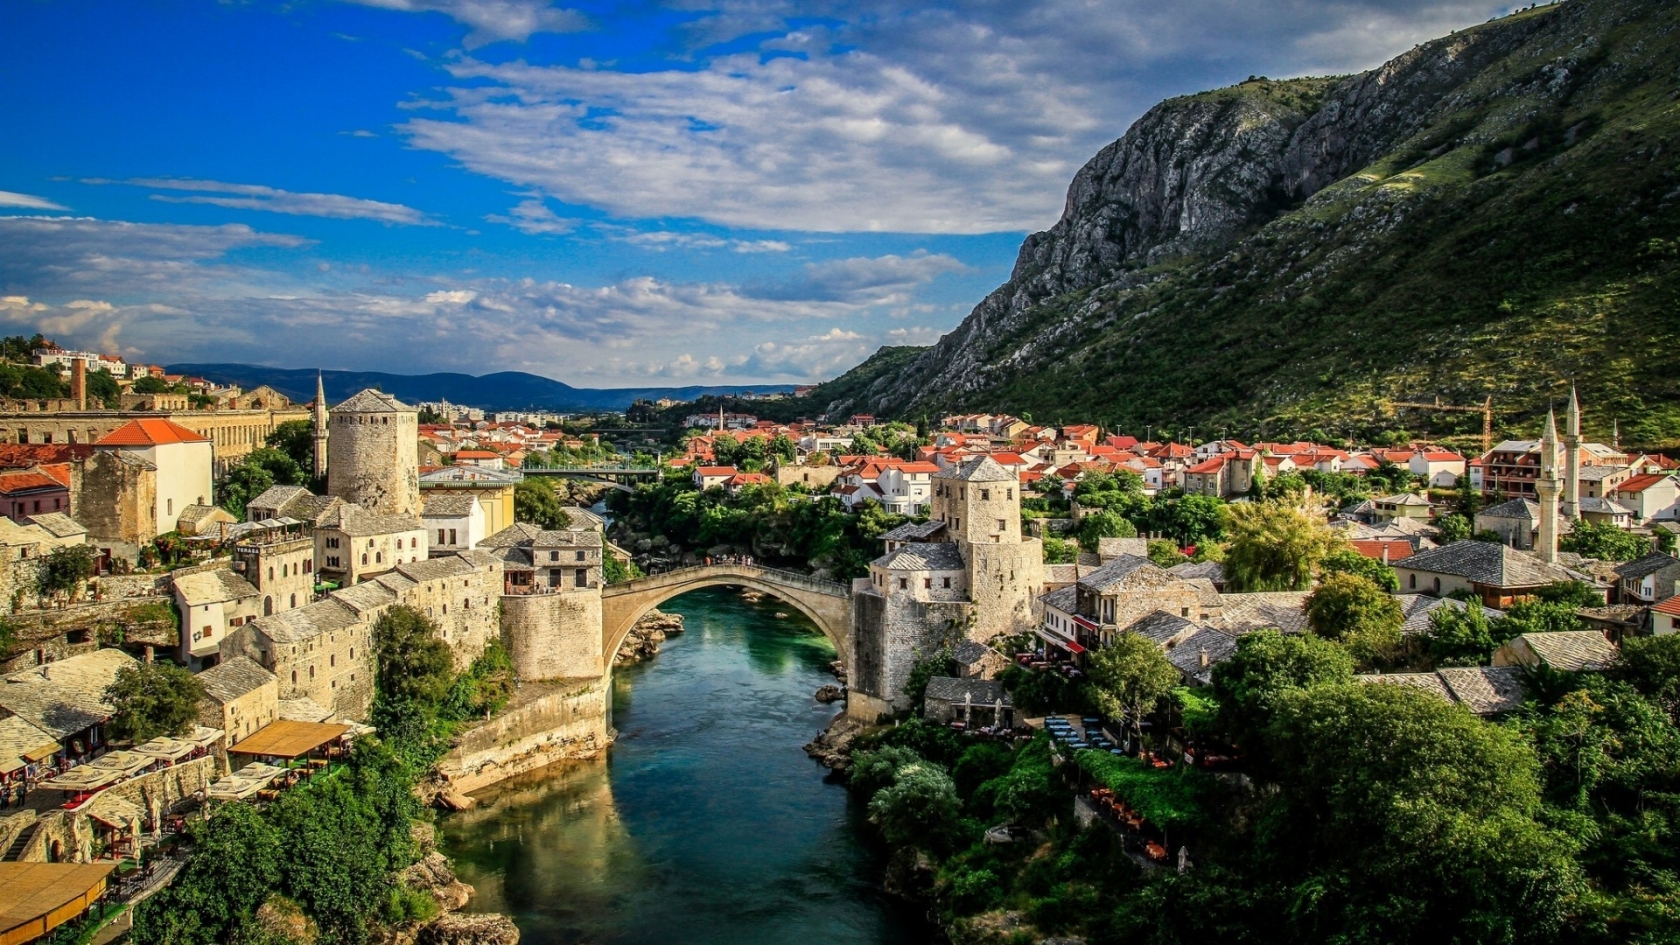 Mostar Bosna i Hercegovina for 1680 x 945 HDTV resolution